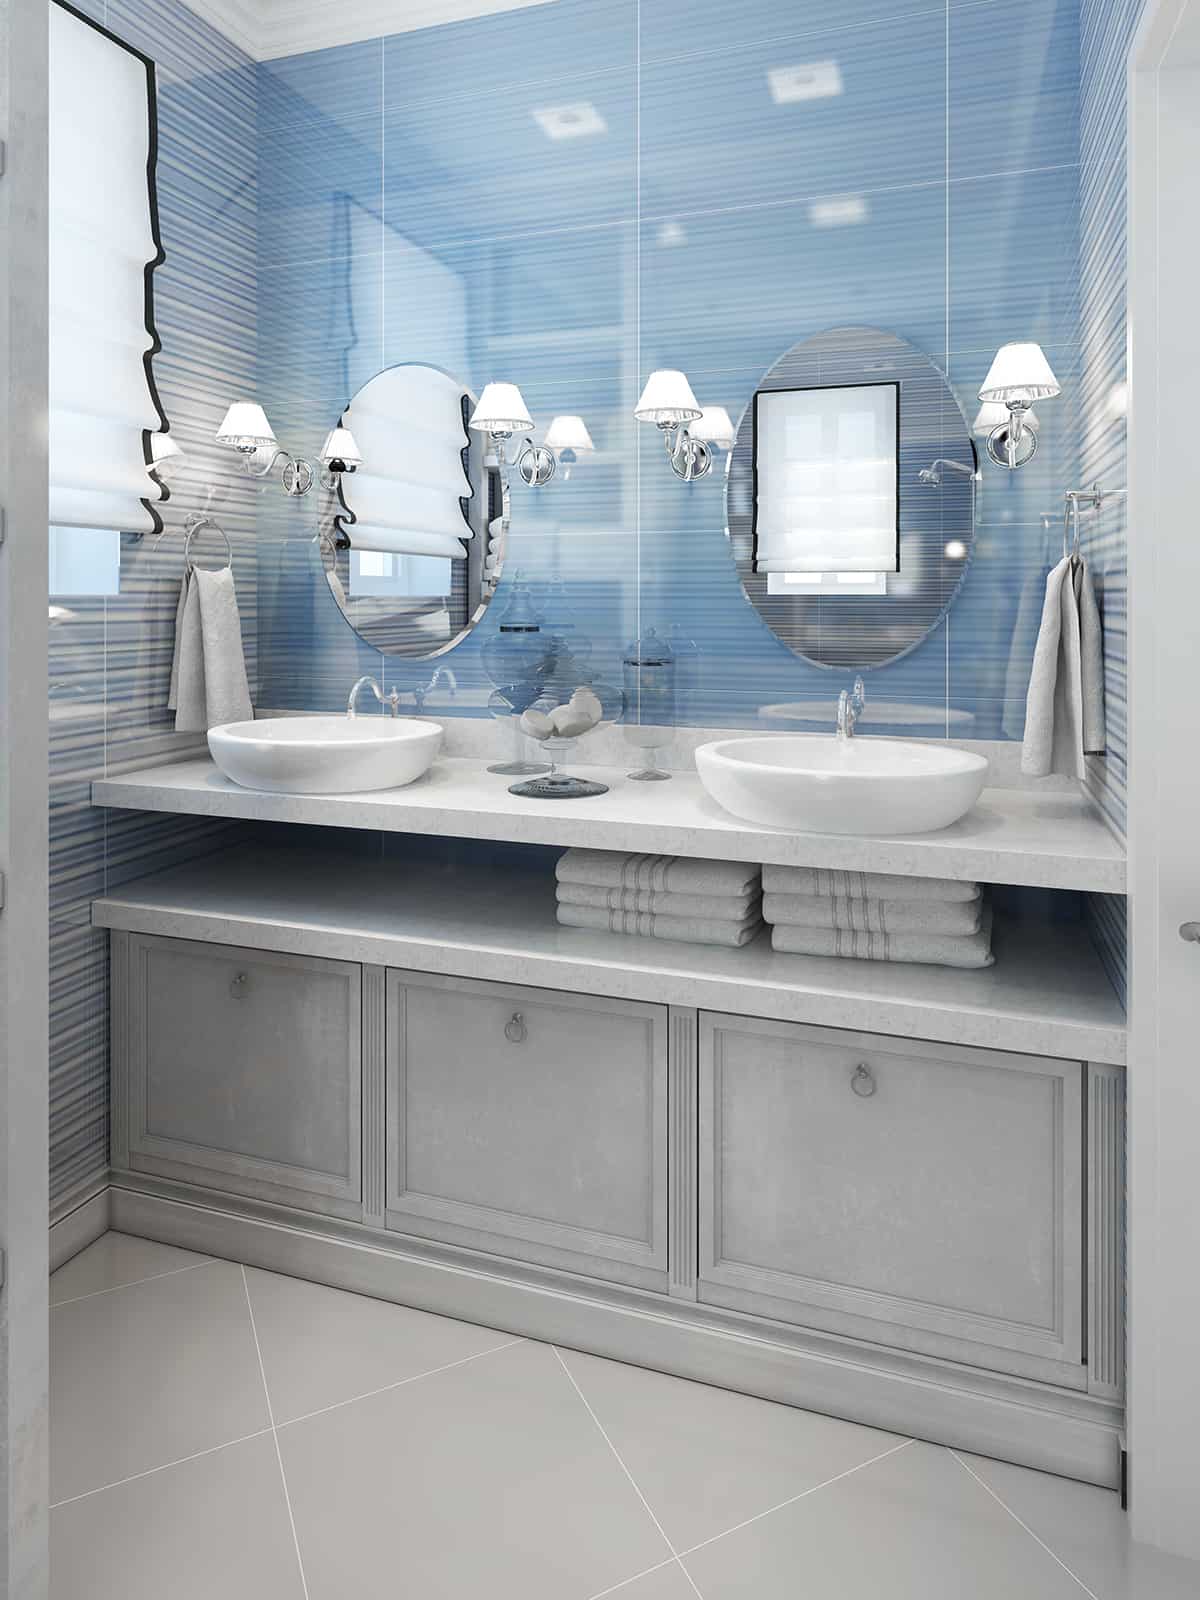 淺藍色的牆壁和淺灰色的浴室櫃